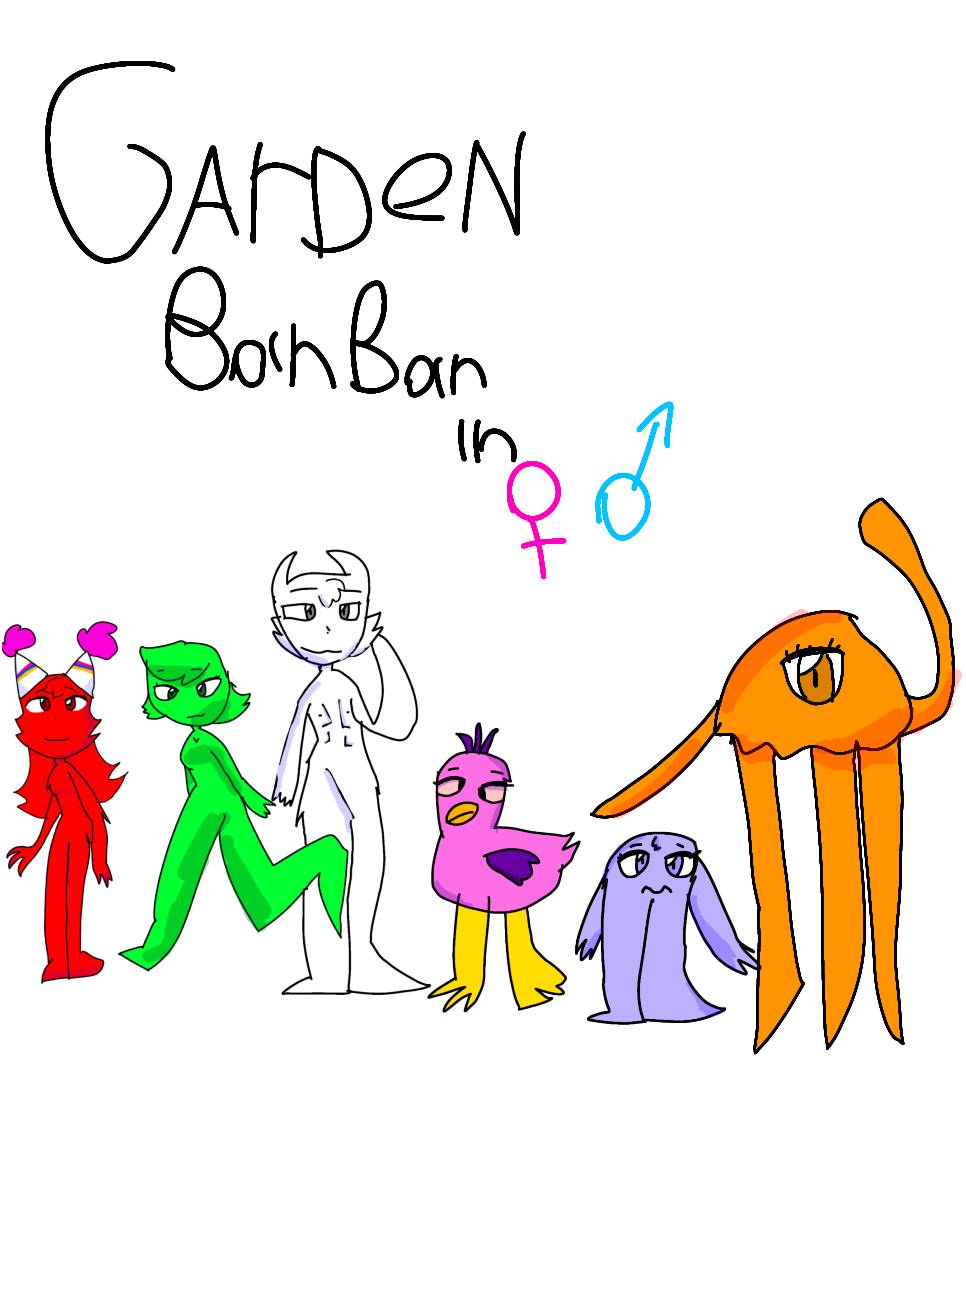 Garden BanBan in Gender Swapped by WeroMilo on DeviantArt